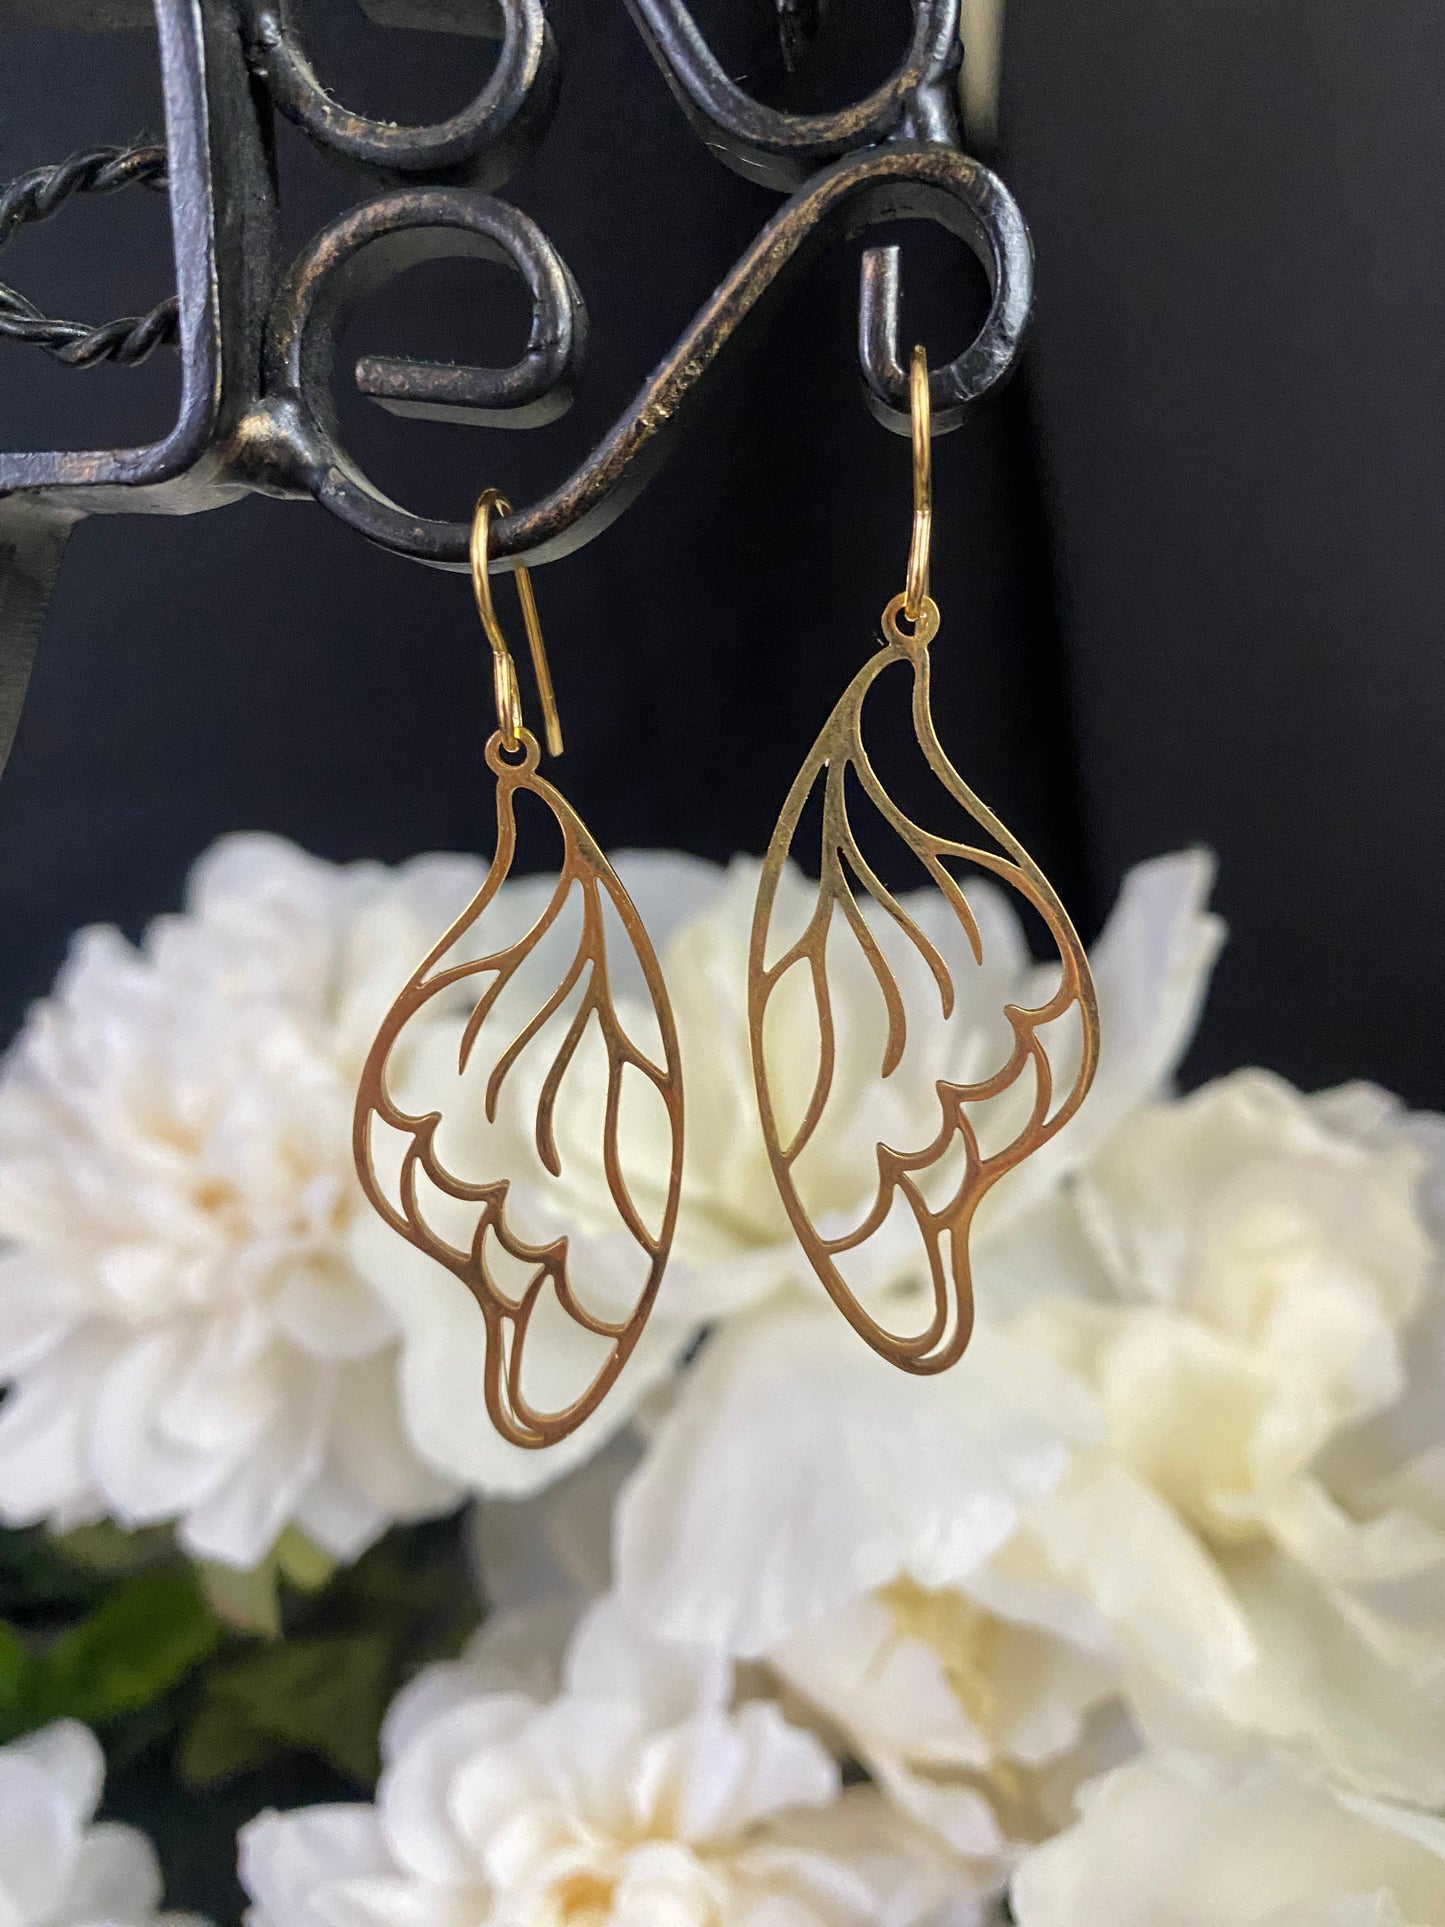 Gold butterfly wing charm earrings